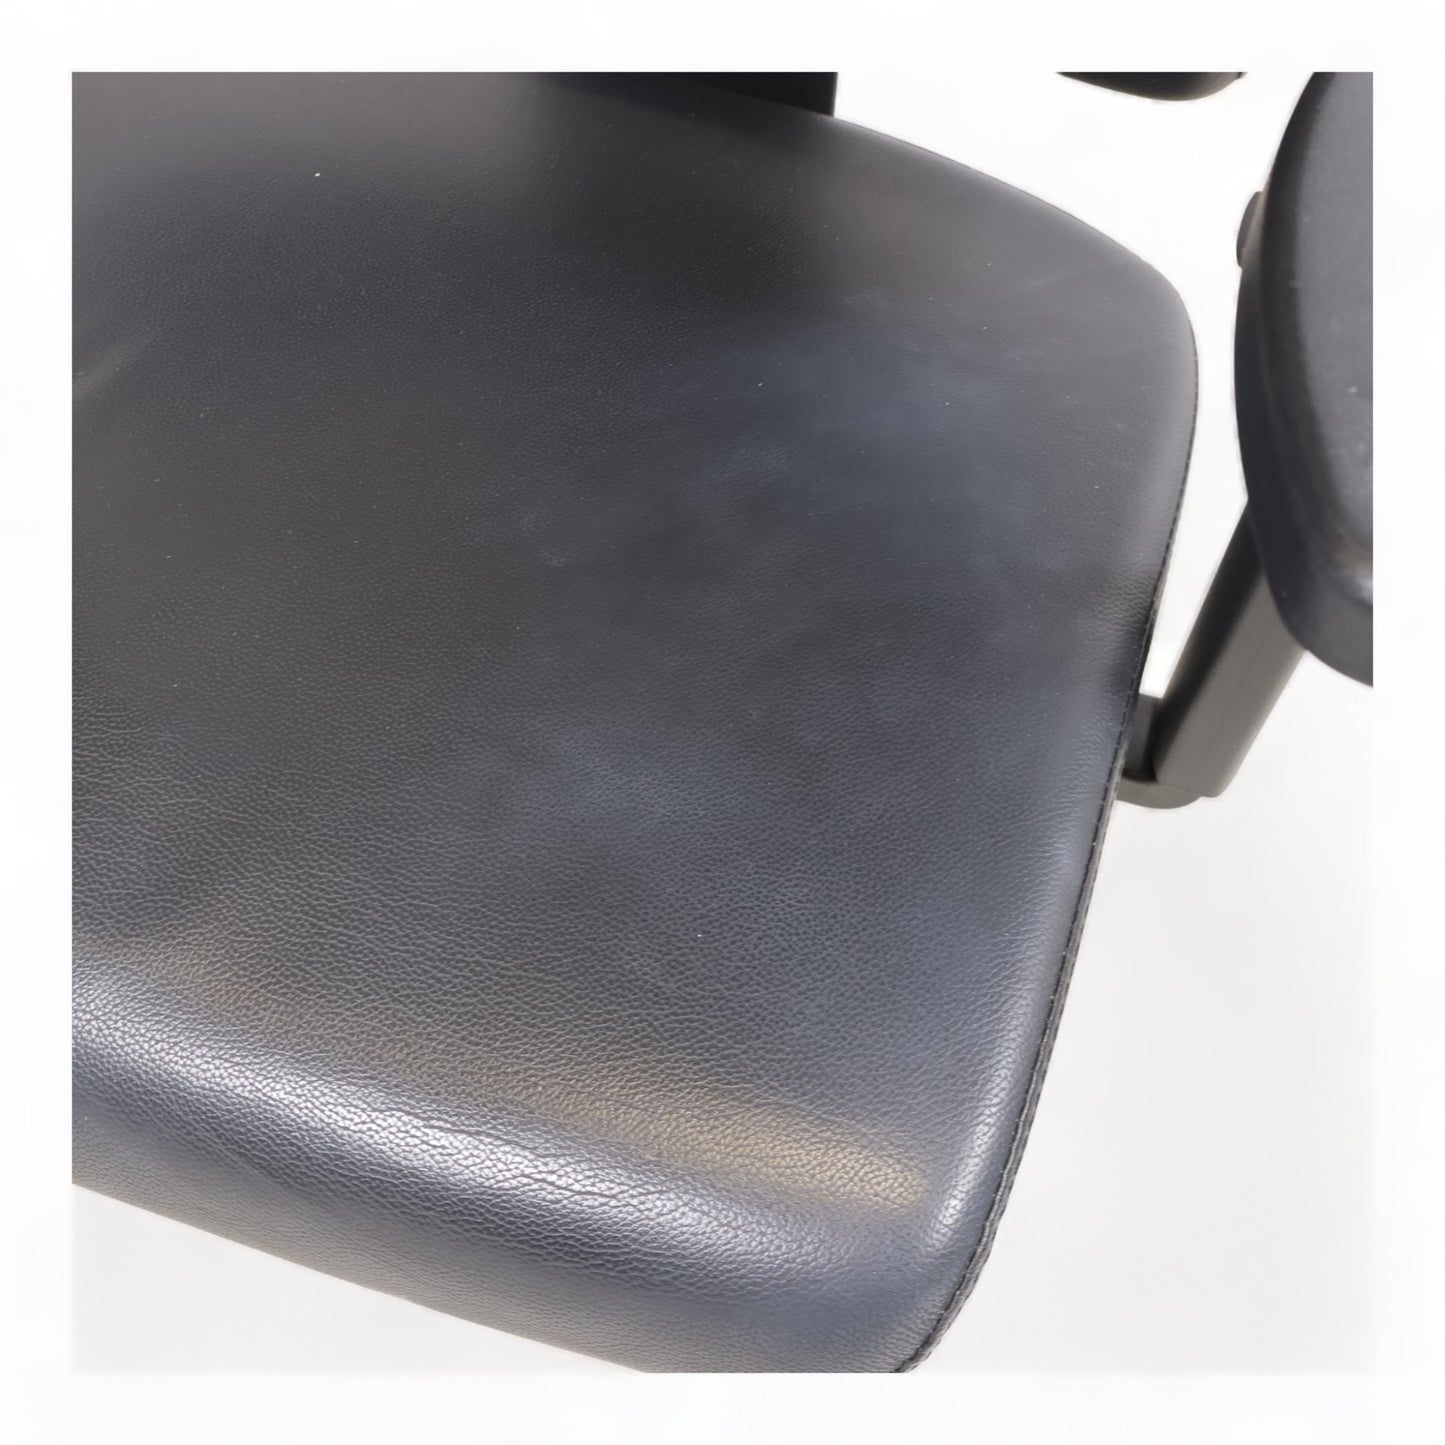 Nyrenset | Sort kontorstol i skinn med høy rygg og nakkestøtte